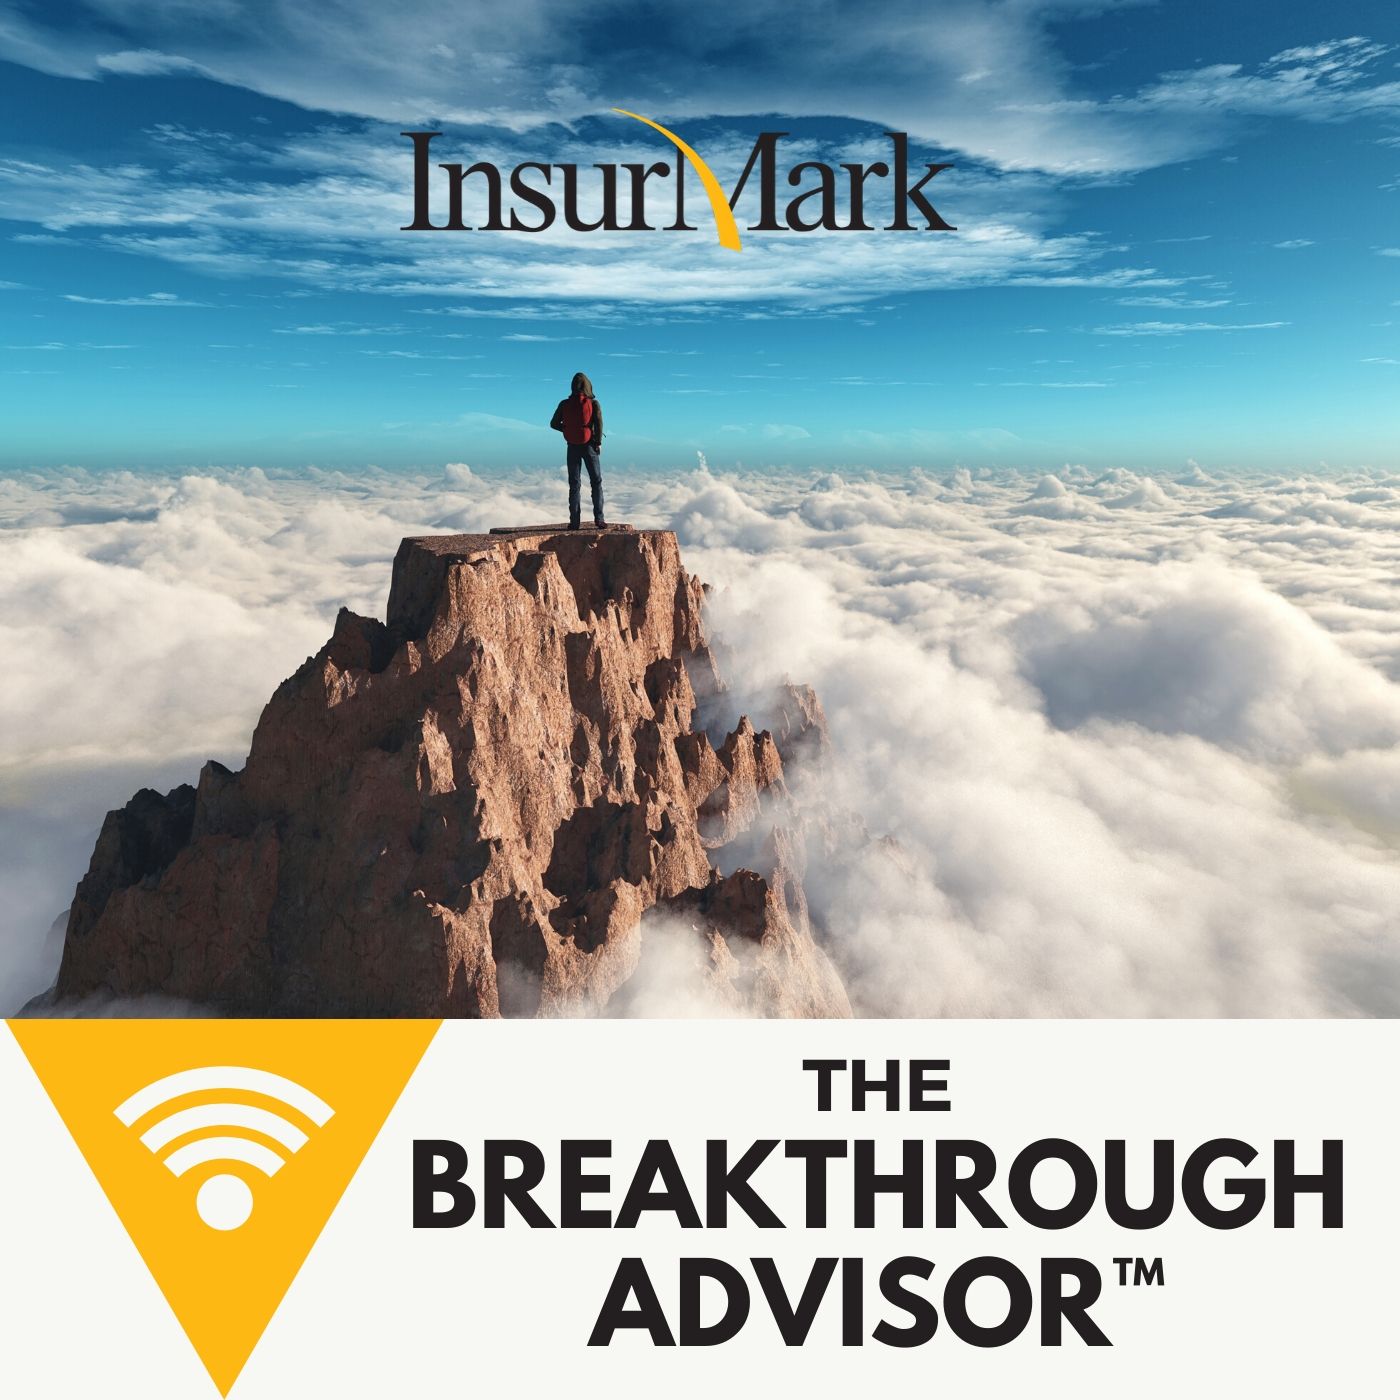 The Breakthrough Advisor™